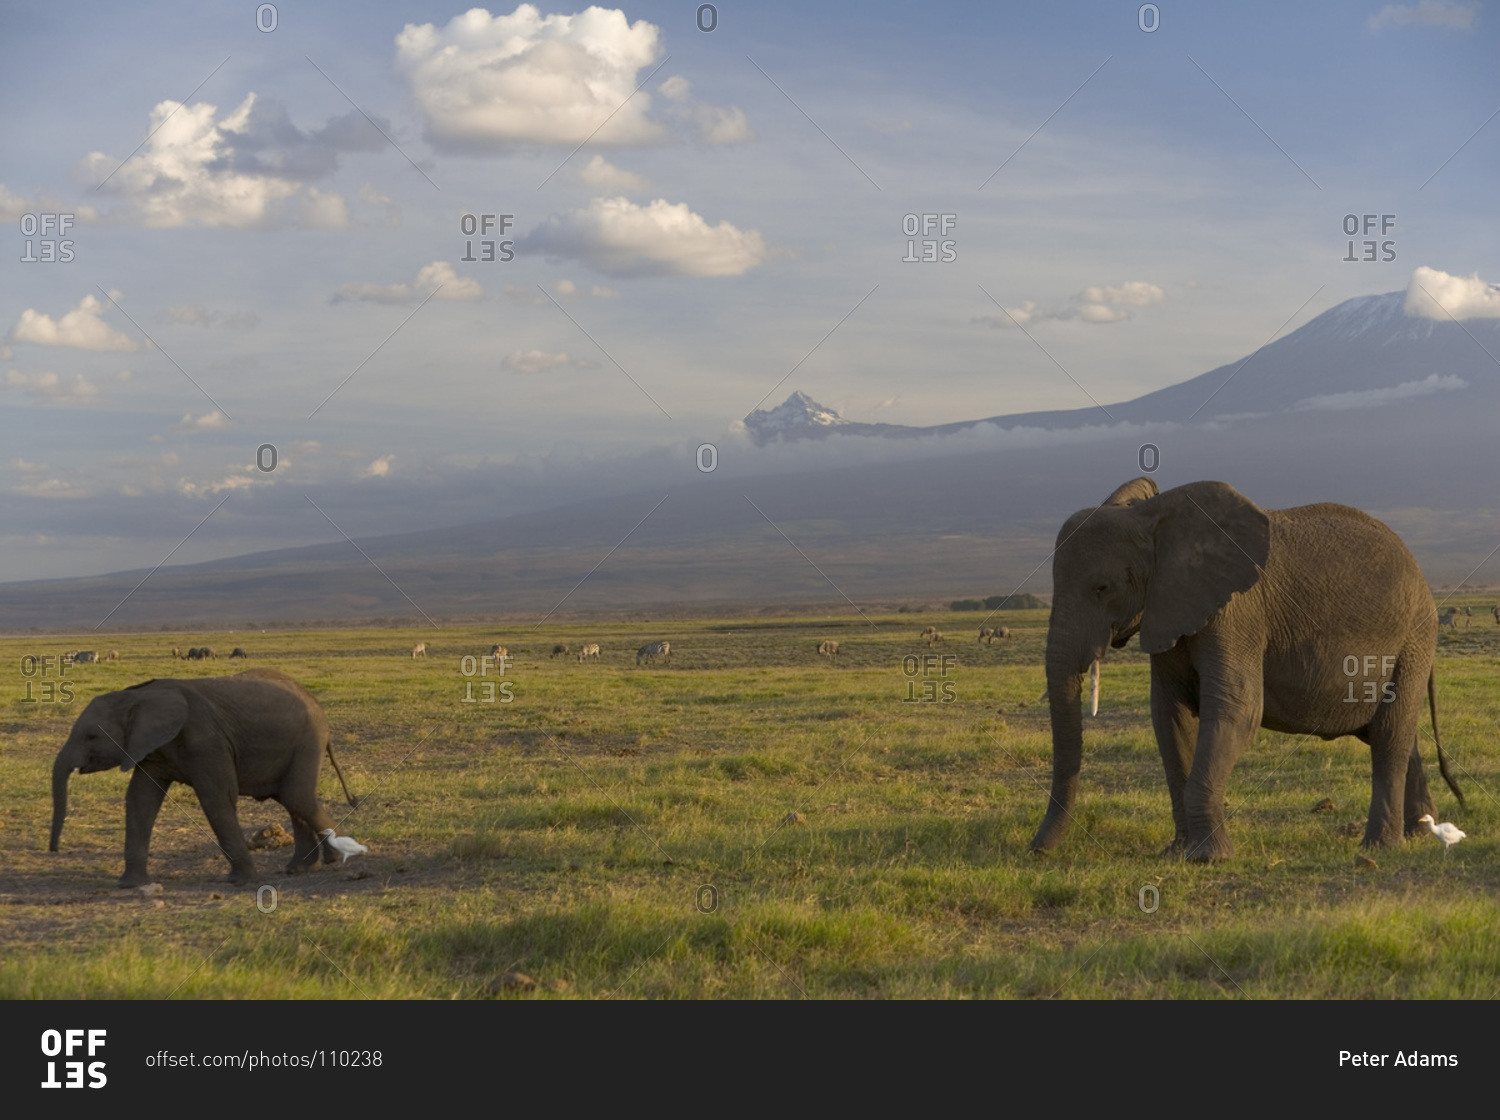 Elephants and other animals under Mount Kilimanjaro, Amboseli National Park, Kenya